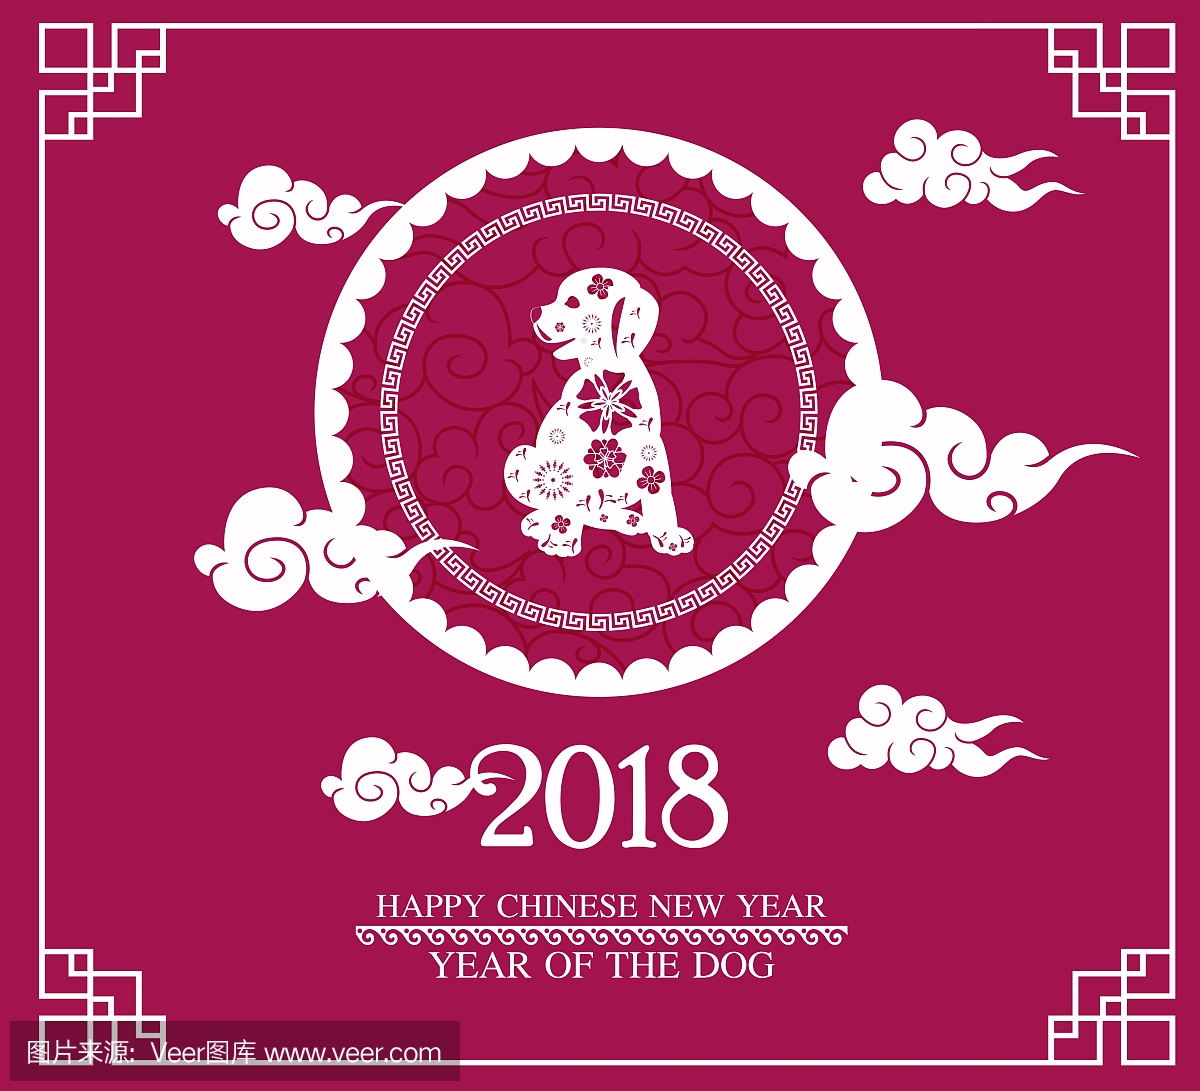 中国新年快乐2018年卡是剪纸框架中的狗纸